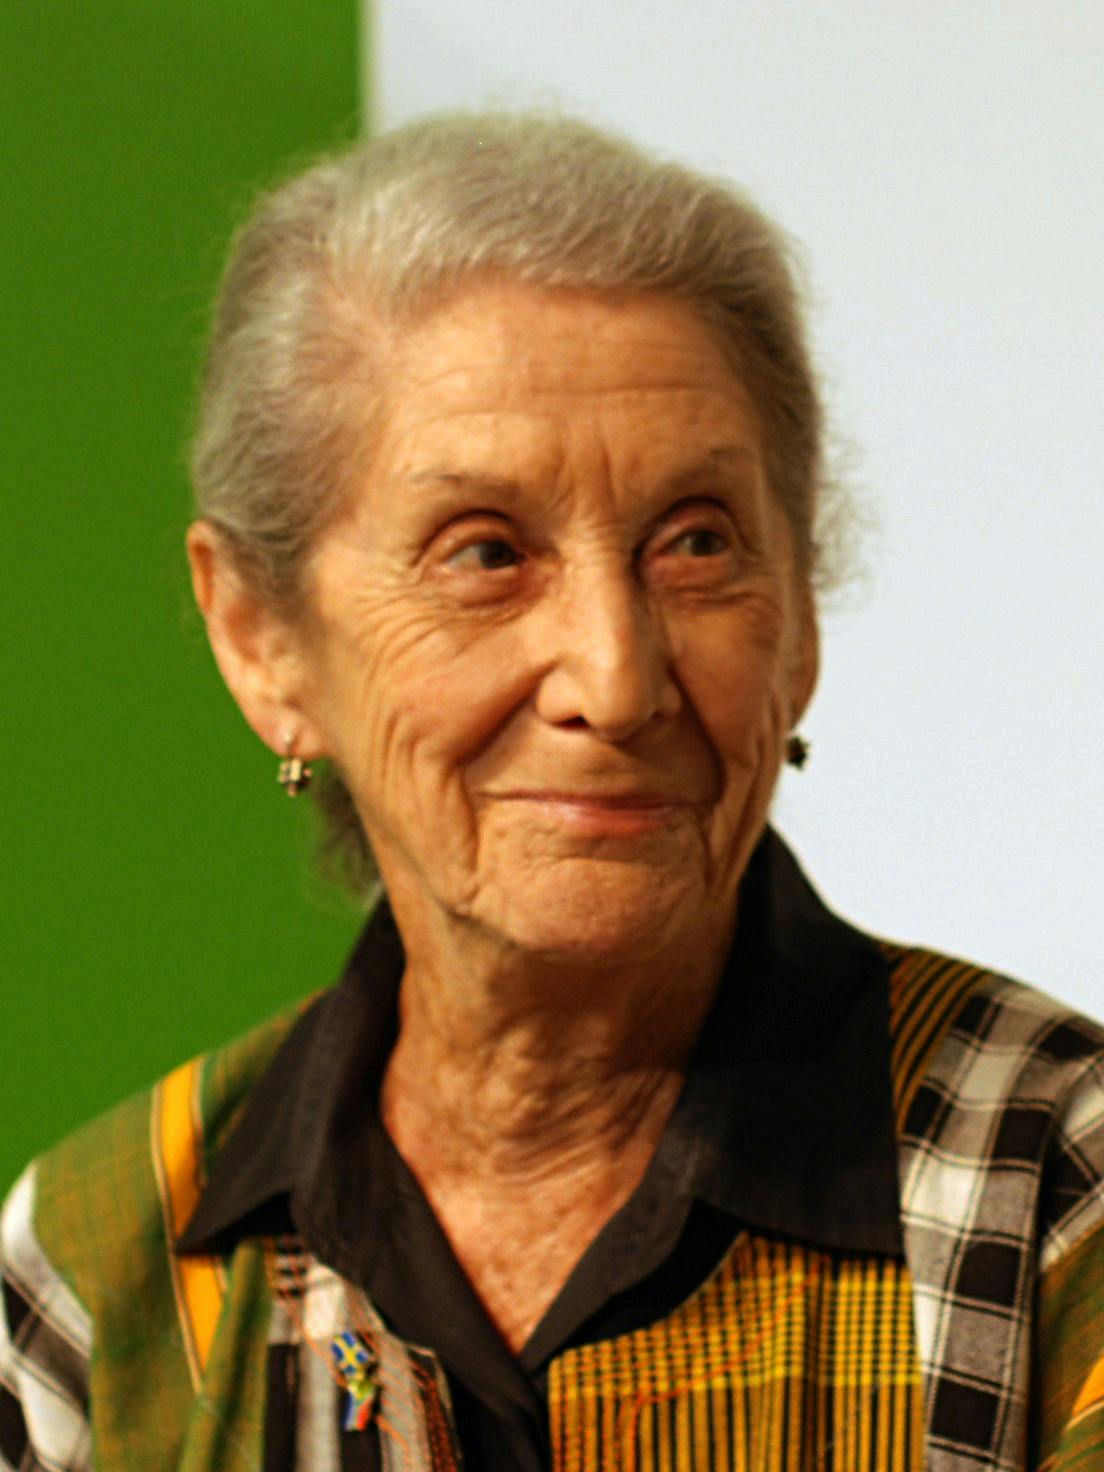 Nadine Gordimer (20 November 1923 – 13 July 2014)